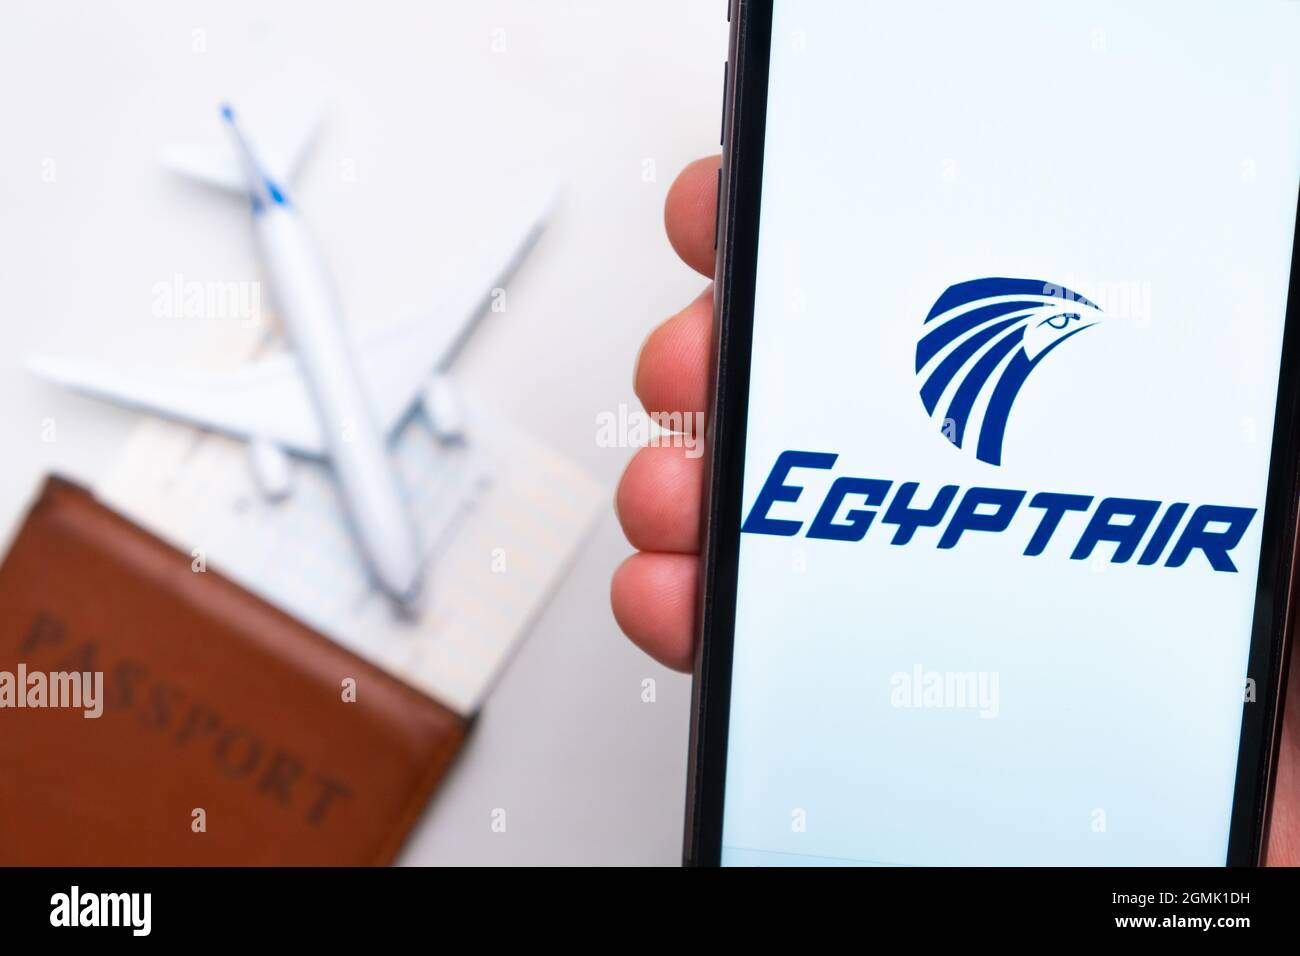 EgyptAir compagnie aérienne logo sur l'écran de téléphone mobile dans la main de l'homme sur le fond de passeport, carte d'embarquement et d'avion, septembre 2021, San Banque D'Images